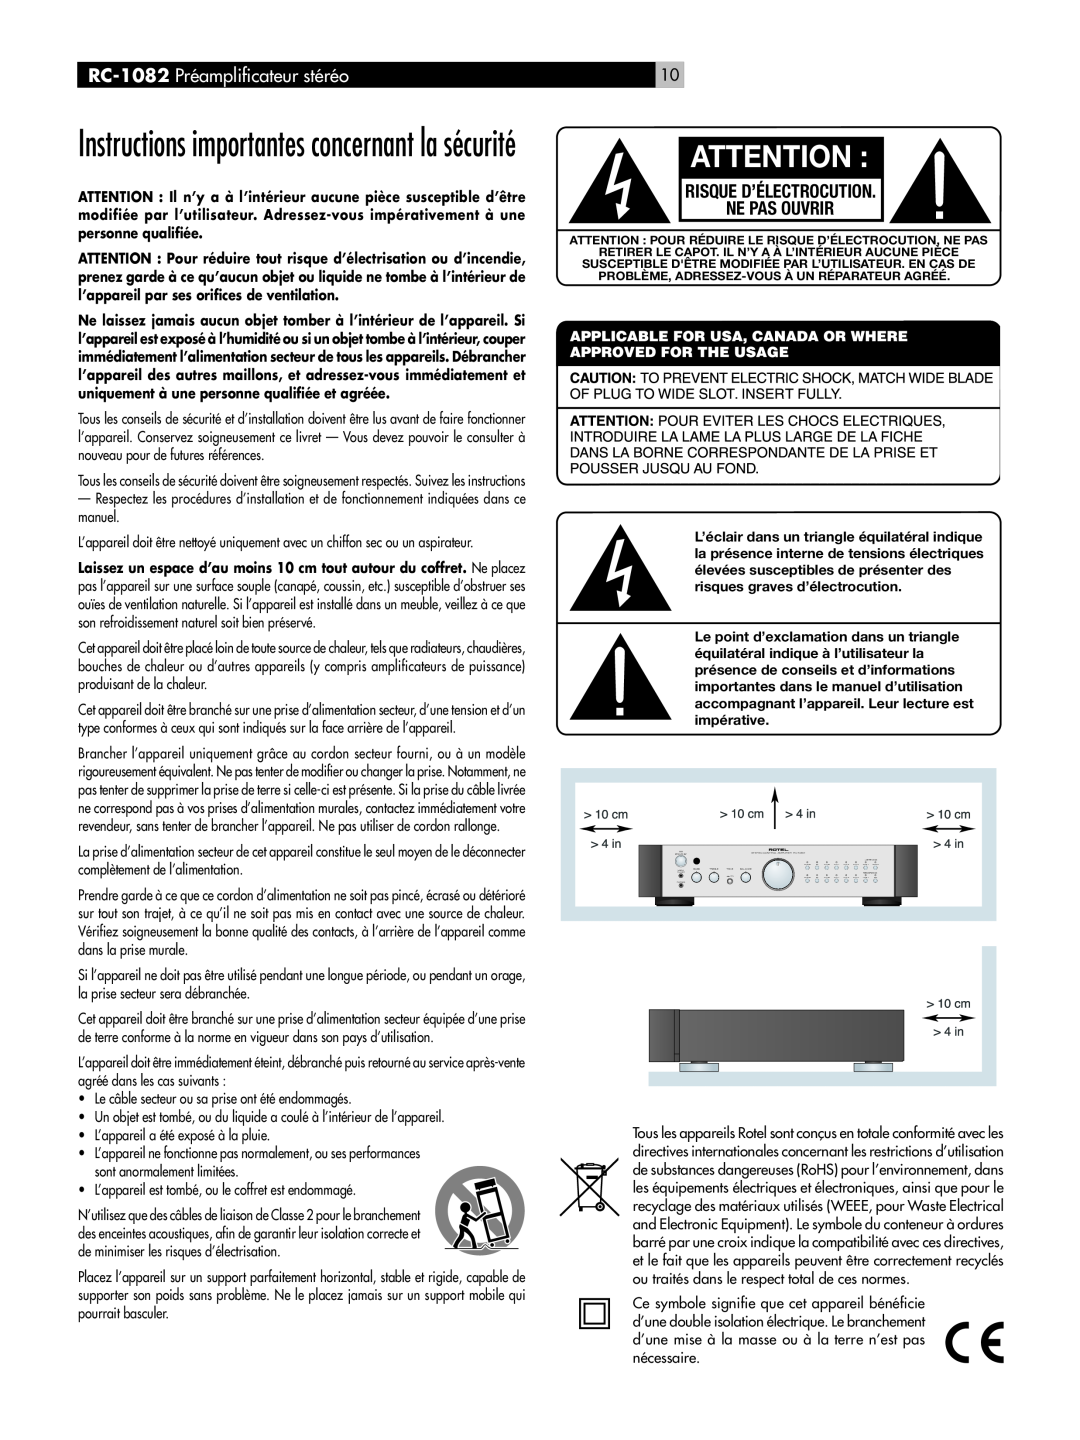 Rotel RC-1082 owner manual Instructions importantes concernant la sécurité, Risque D’Électrocution Ne Pas Ouvrir 